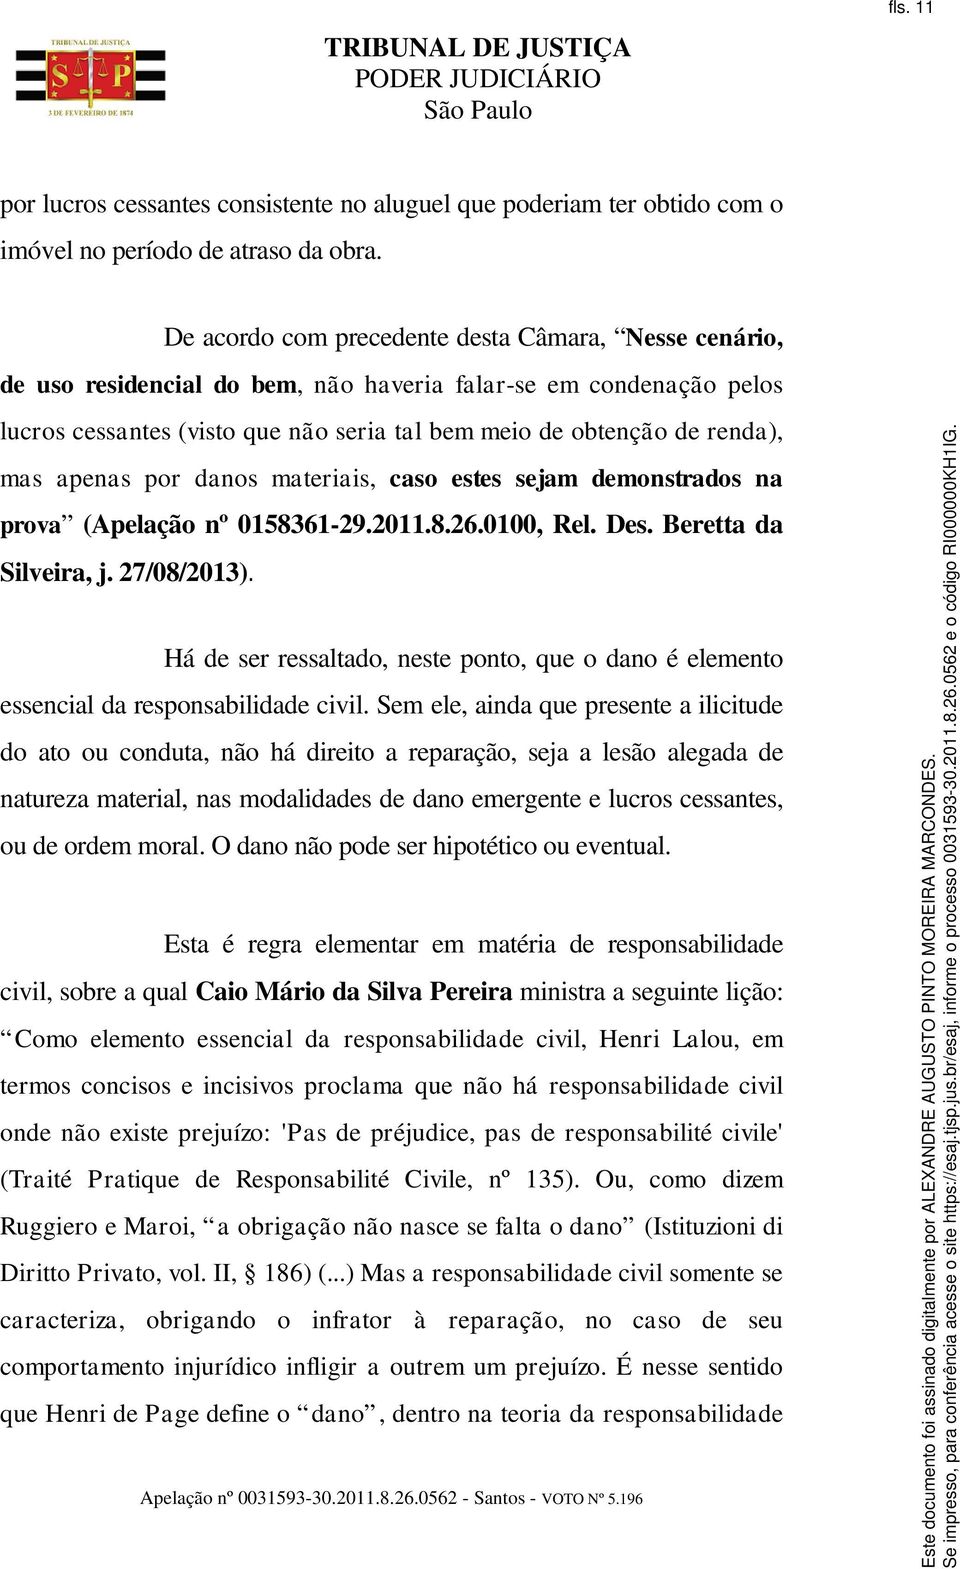 apenas por danos materiais, caso estes sejam demonstrados na prova (Apelação nº 0158361-29.2011.8.26.0100, Rel. Des. Beretta da Silveira, j. 27/08/2013).